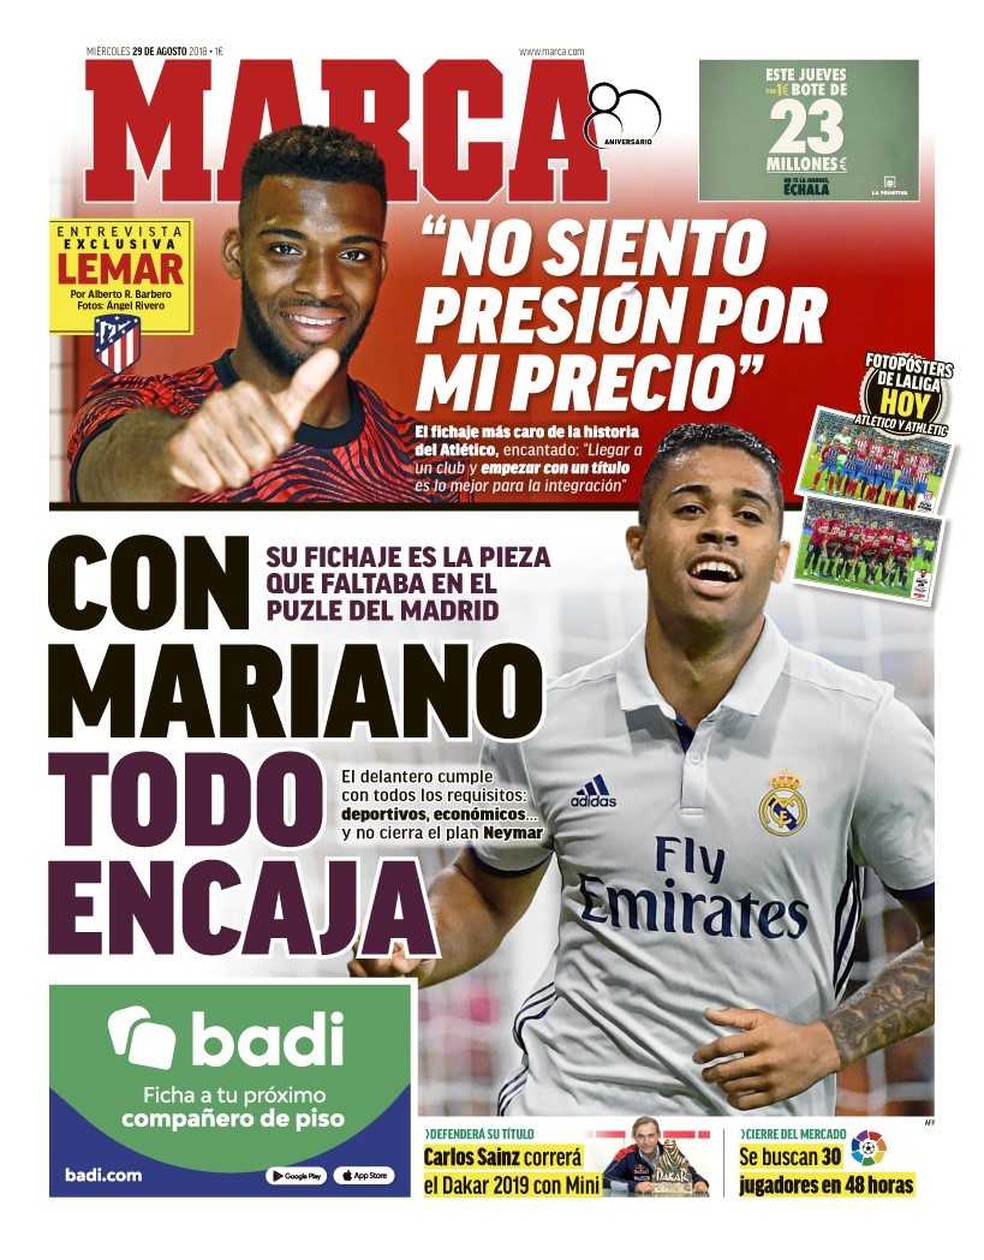 ContrataÃ§Ã£o de Mariano Diaz pelo Real Madrid Ã© manchete no Marca (Foto: ReproduÃ§Ã£o / Marca)